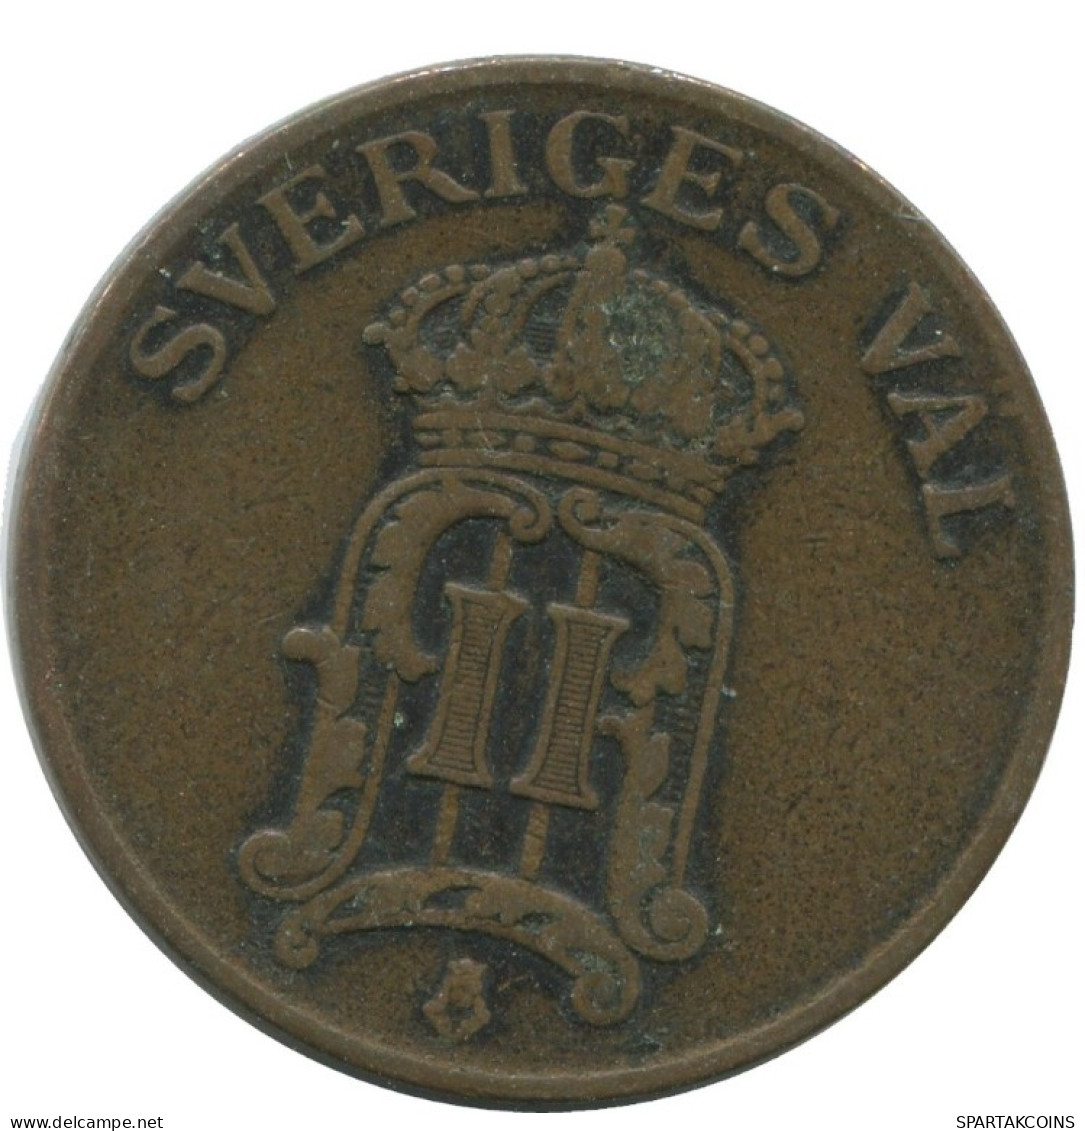 2 ORE 1906 SWEDEN Coin #AC985.2.U.A - Suède